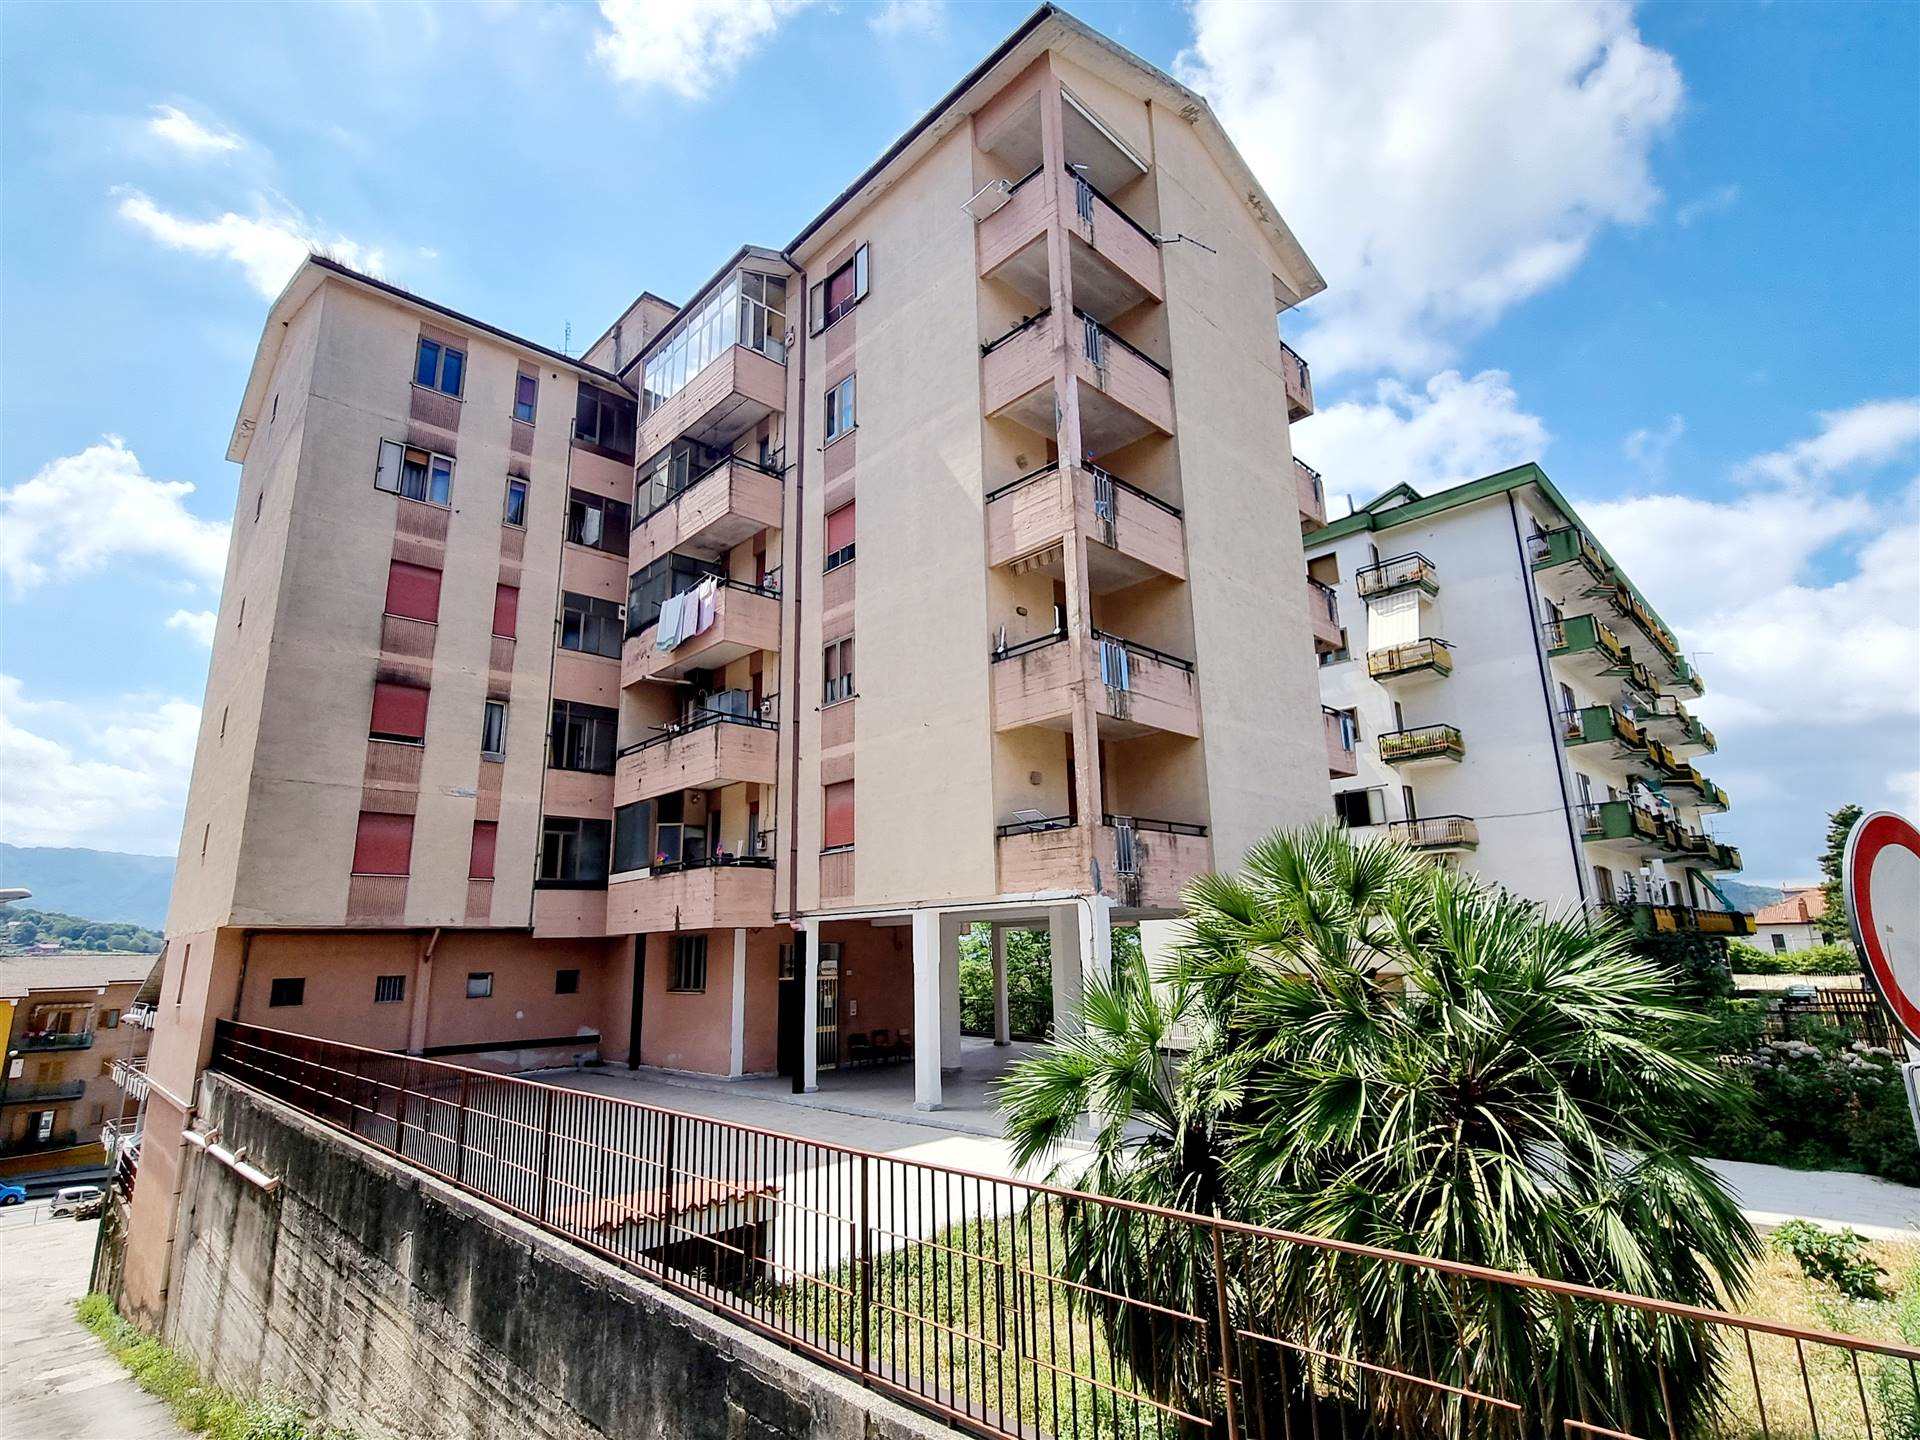 Appartamento in vendita a Montefalcione, 4 locali, prezzo € 45.000 | CambioCasa.it